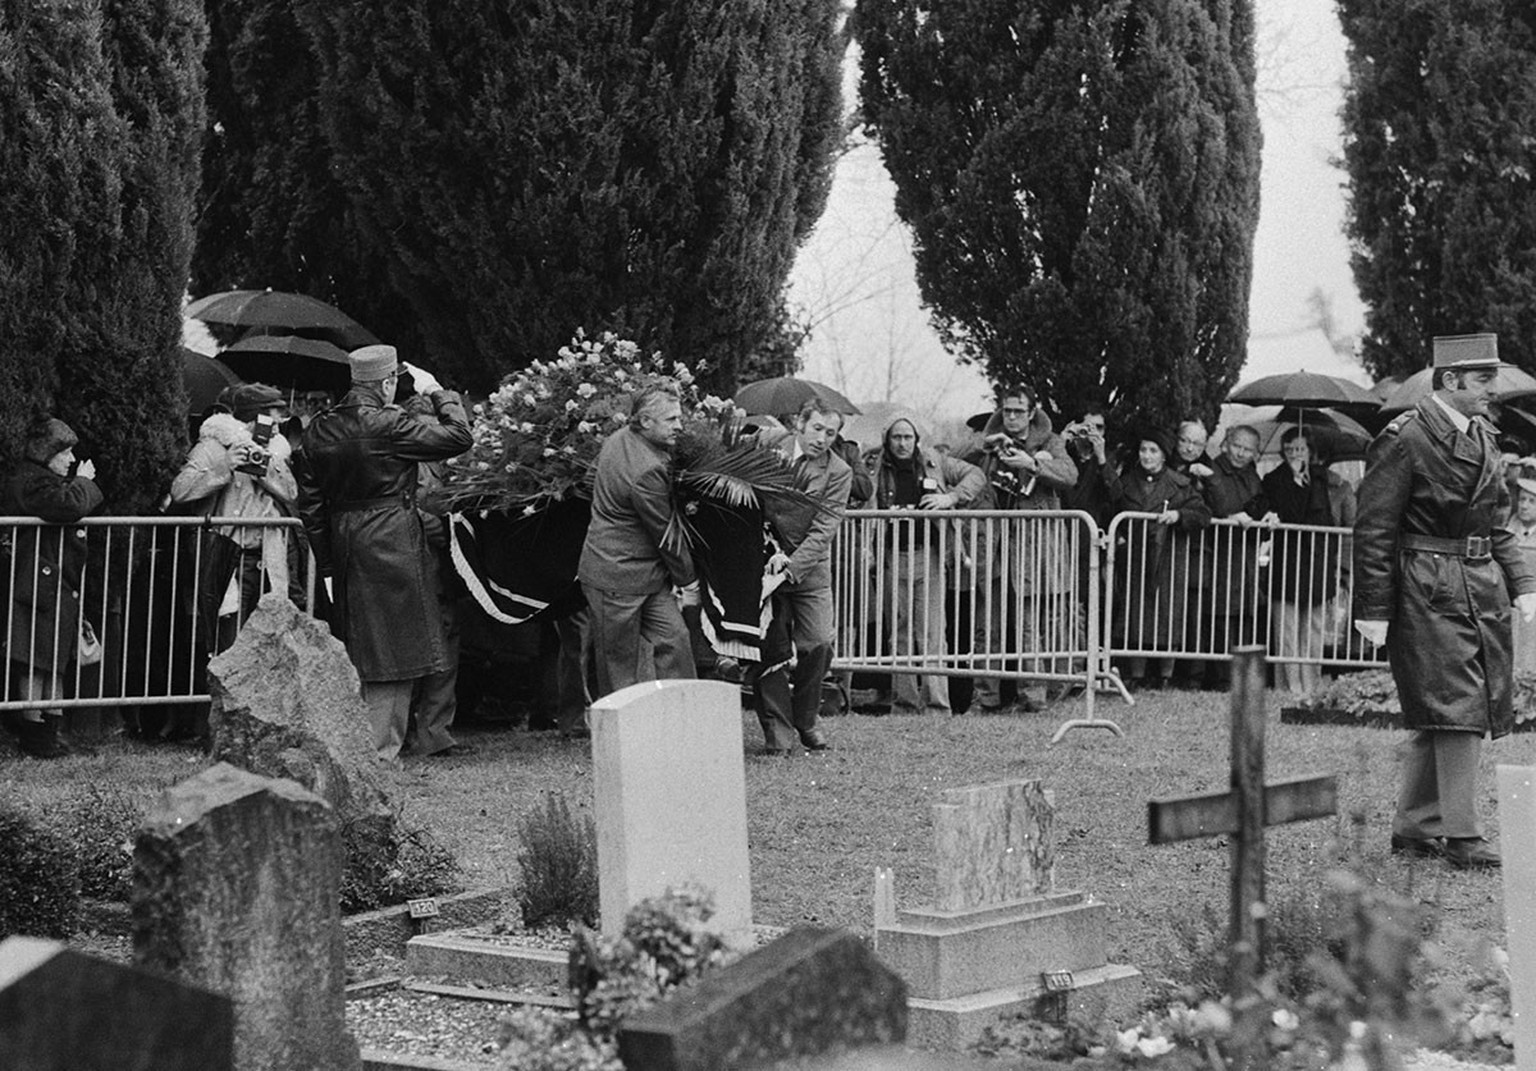 La tombe de Charlie Chaplin à Corsier-sur-Vevey en décembre 1977.
https://permalink.nationalmuseum.ch/100643230